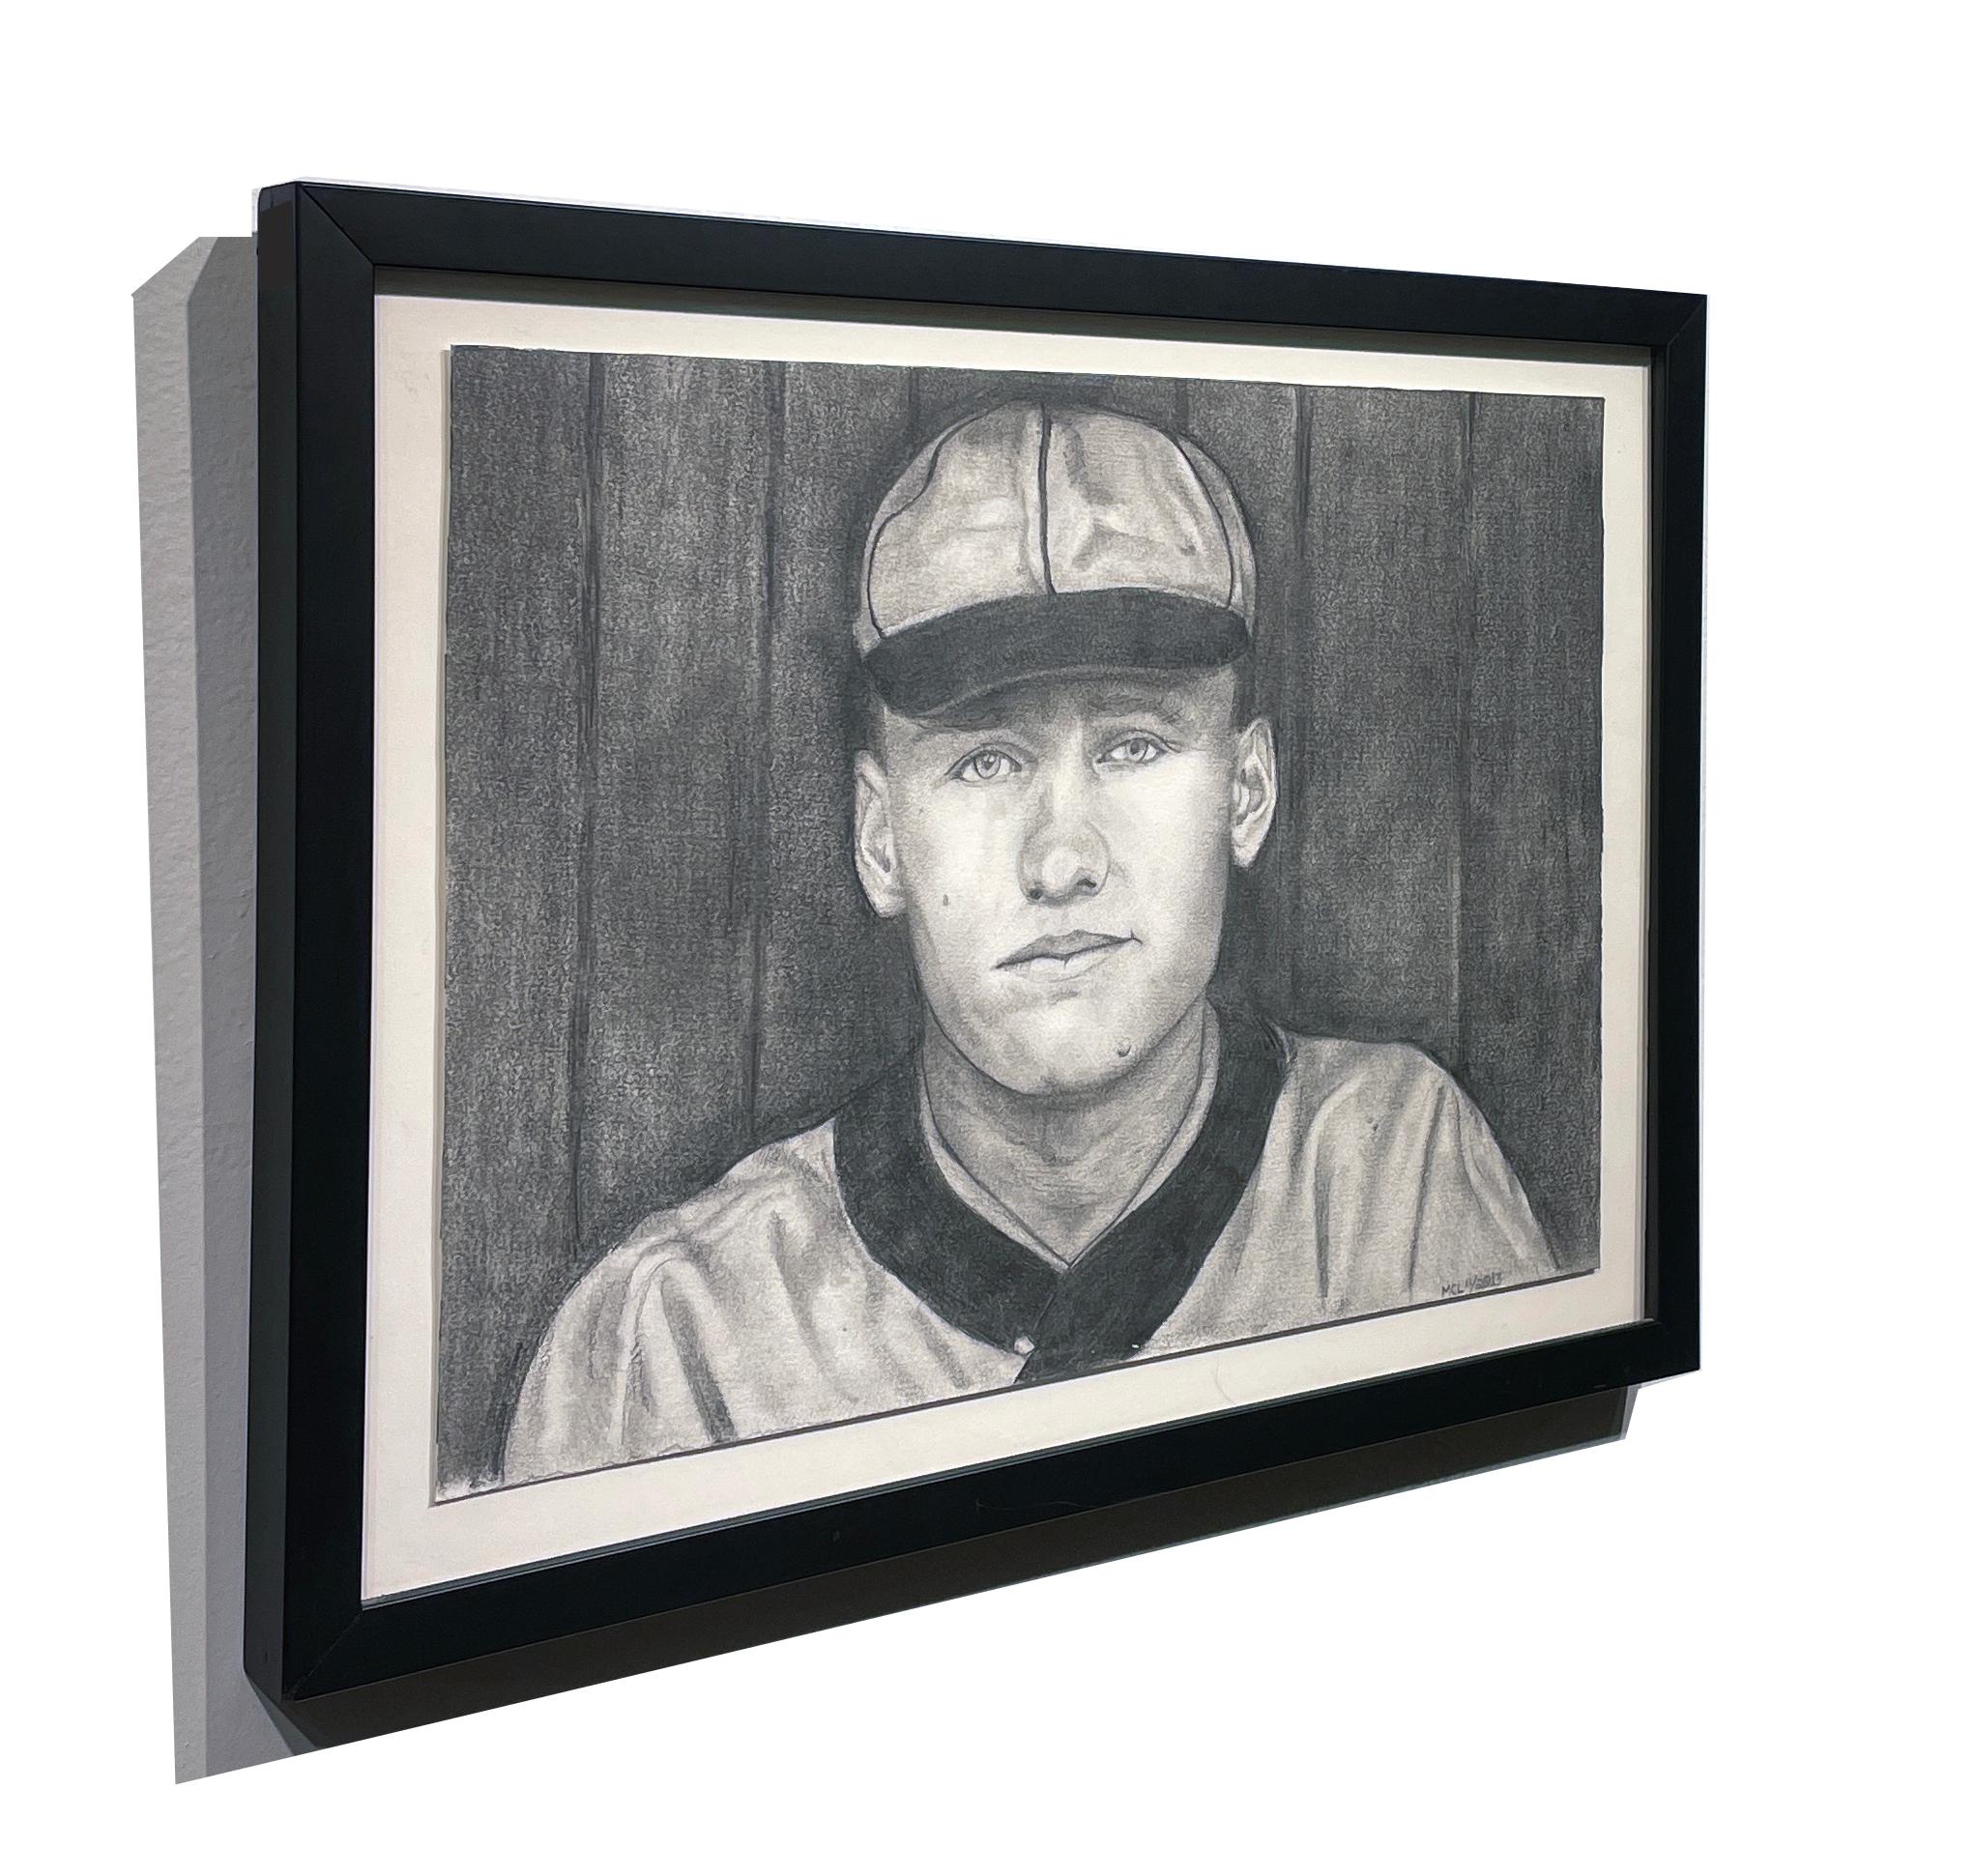 Walter Johnson - Joueur de baseball célèbre des sénateurs de Washington, graphite sur papier - Contemporain Painting par Margie Lawrence